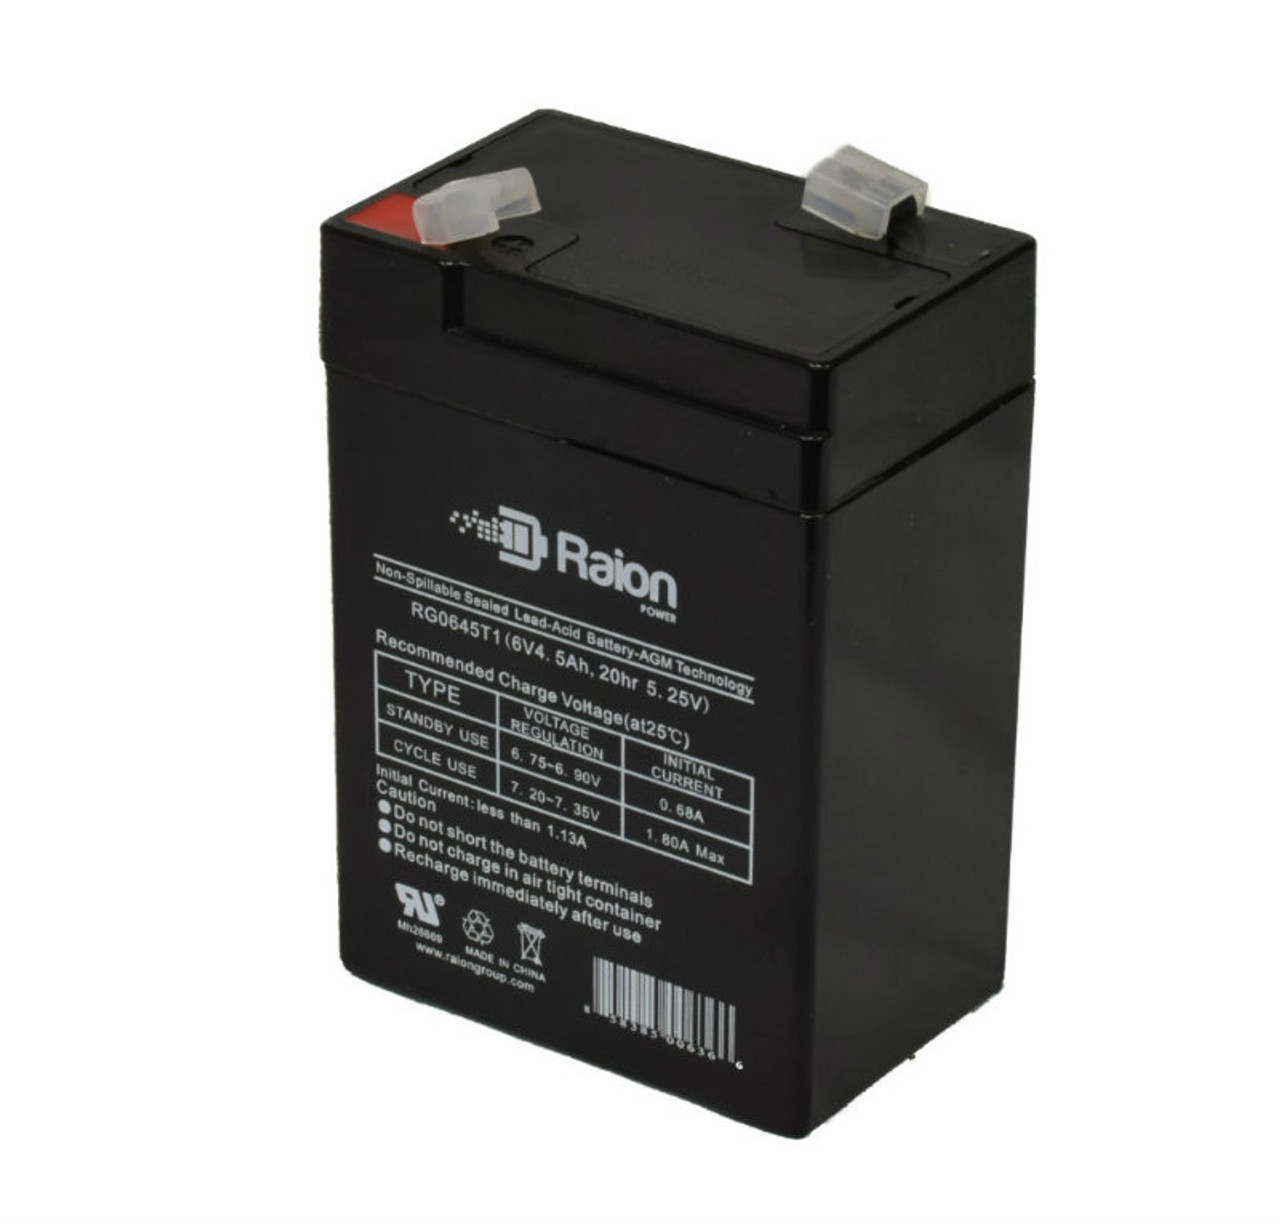 Raion Power RG0645T1 6V 4.5Ah Replacement Battery Cartridge for Kid Trax Disney DF-8600 (Fairies Mini Quad)